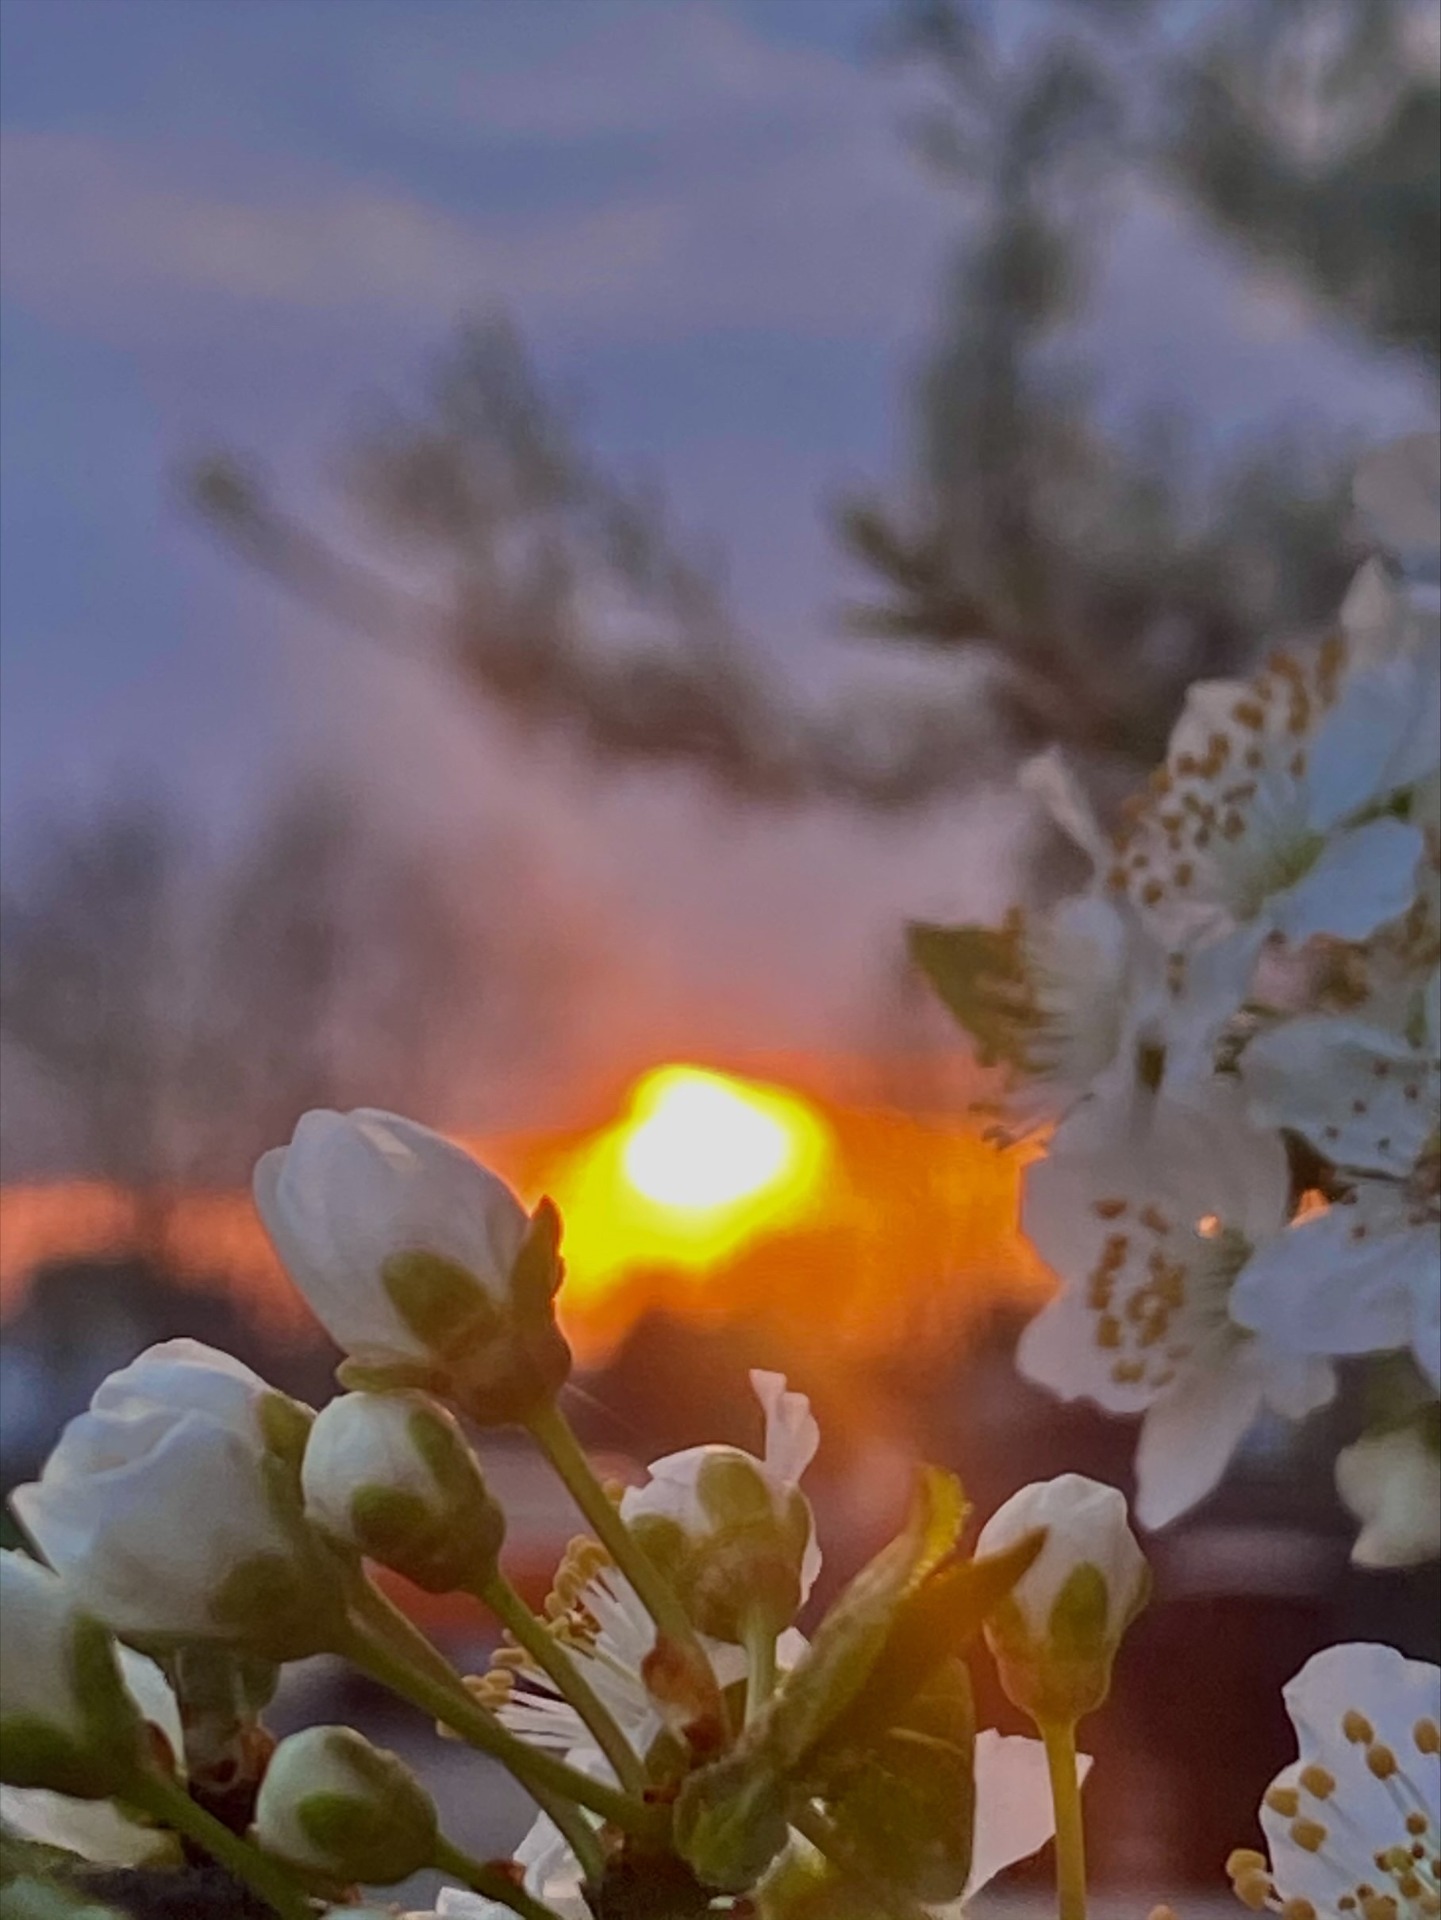 Klasowy konkurs fotograficzny "Wiosna" i "Wiosenny zachód słońca" rozstrzygnięty! - Obrazek 5